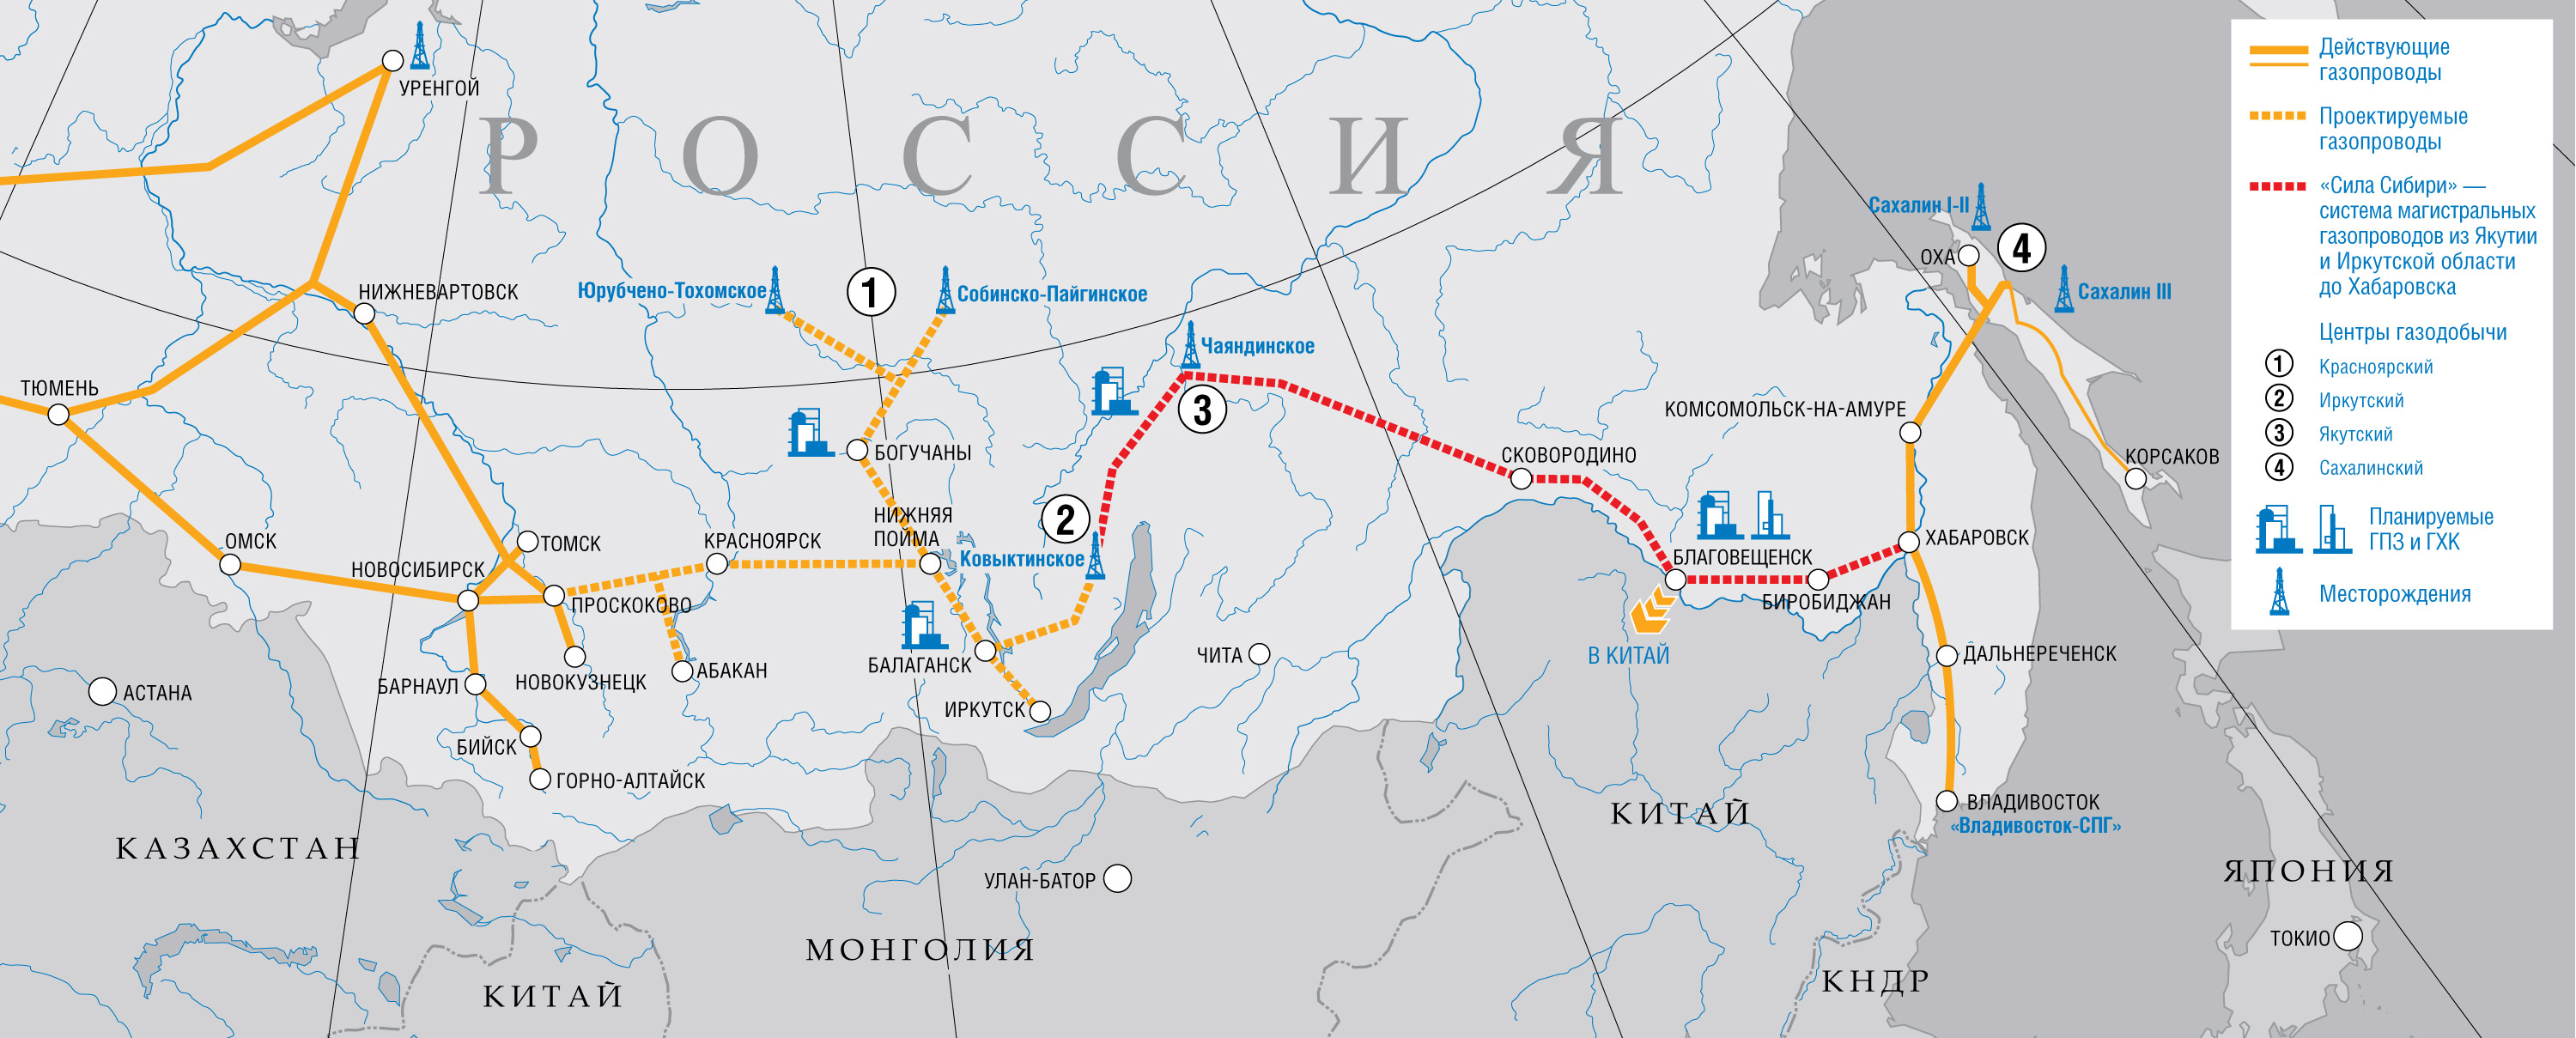 Освоение газовых ресурсов и формирование газотранспортной системы на Востоке России